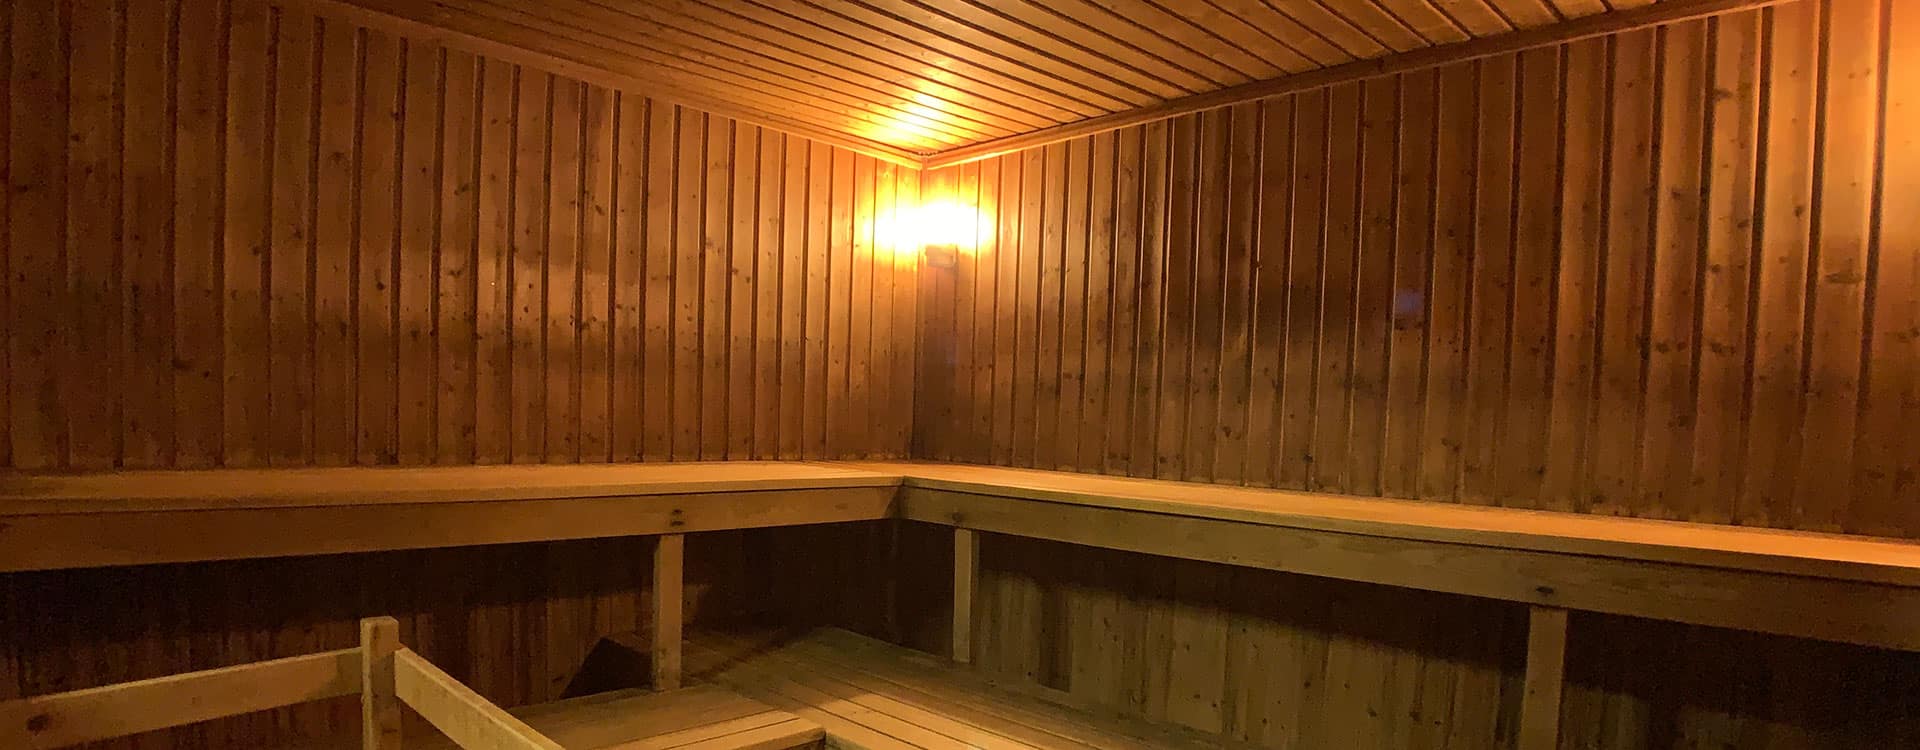 Koncept Sauna